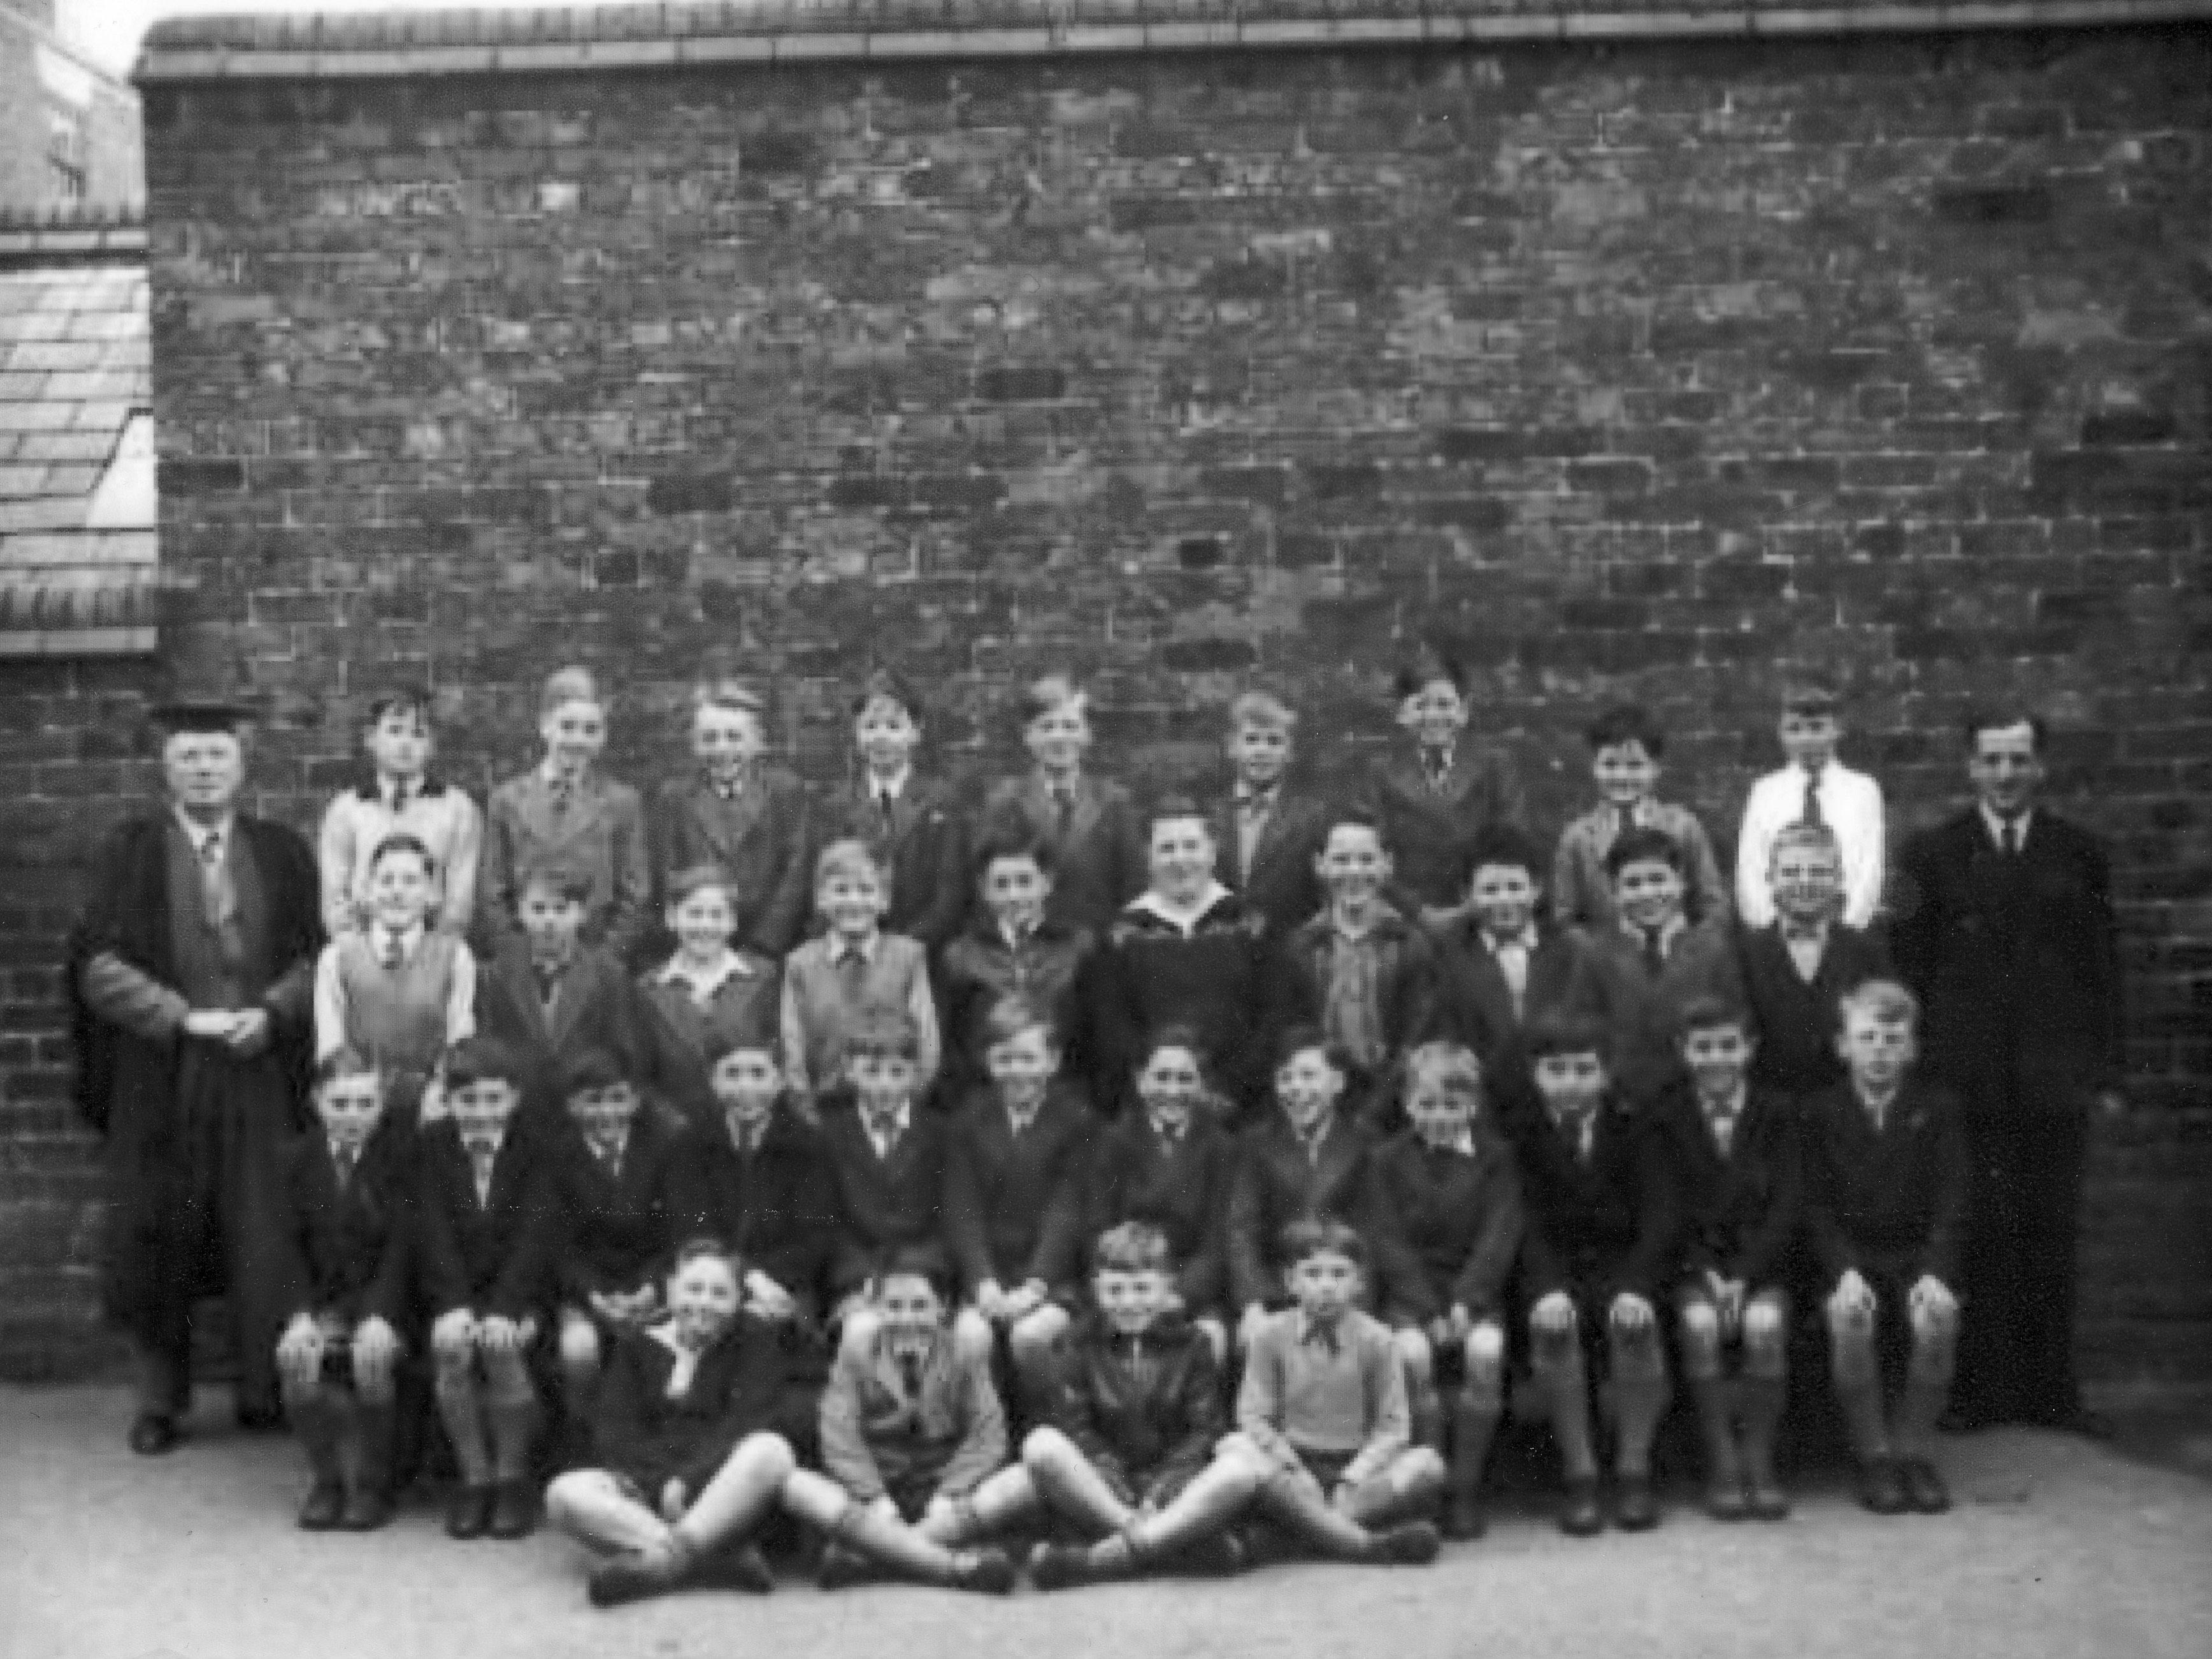 St Werburgh's Boys School